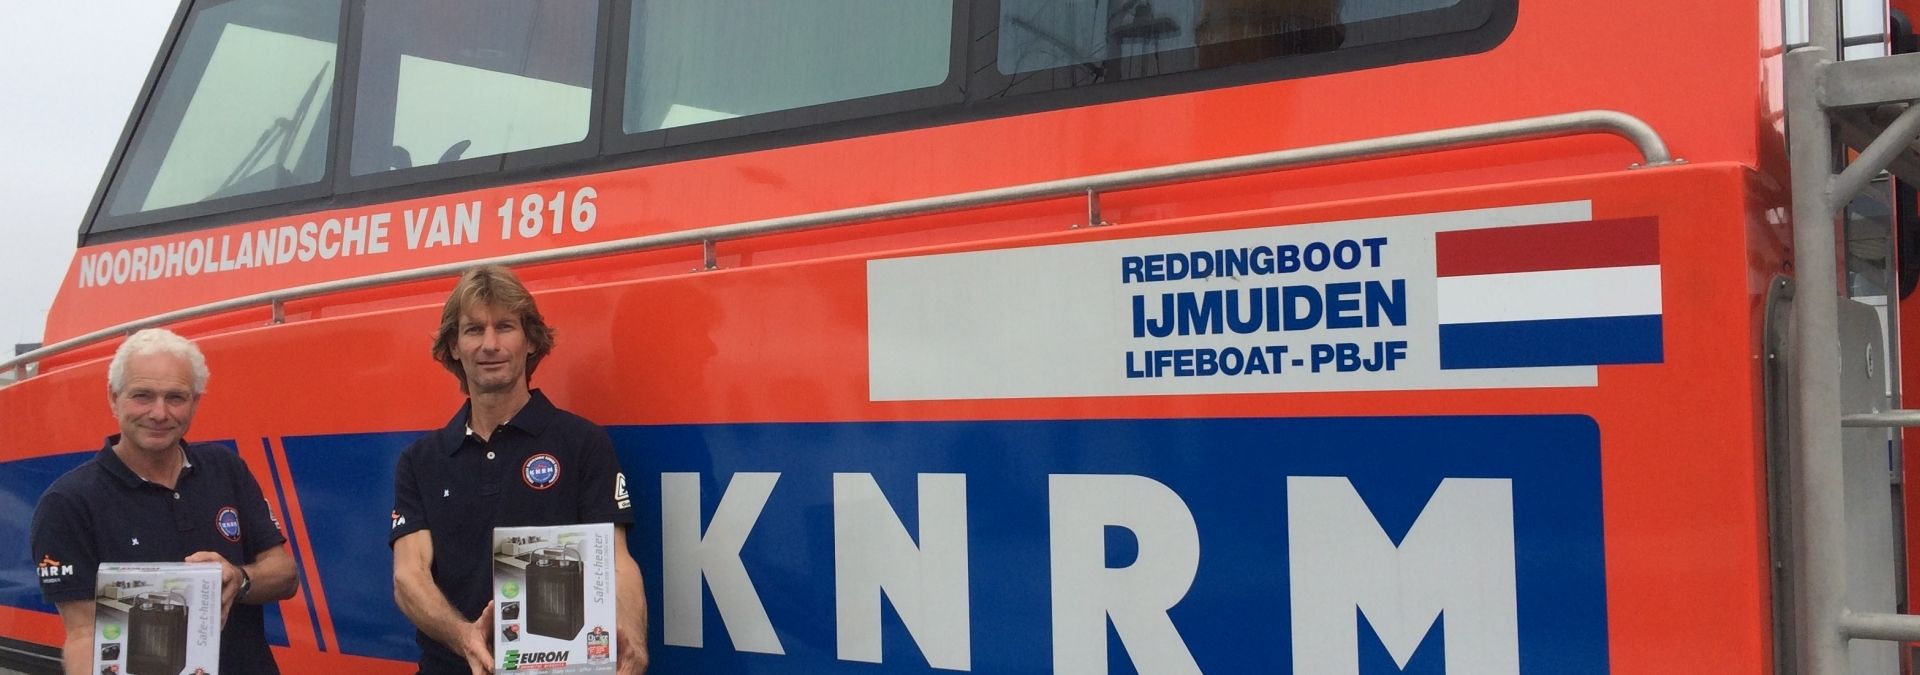 Euromac sponsort partij nieuwe kachels voor KNRM reddingboten